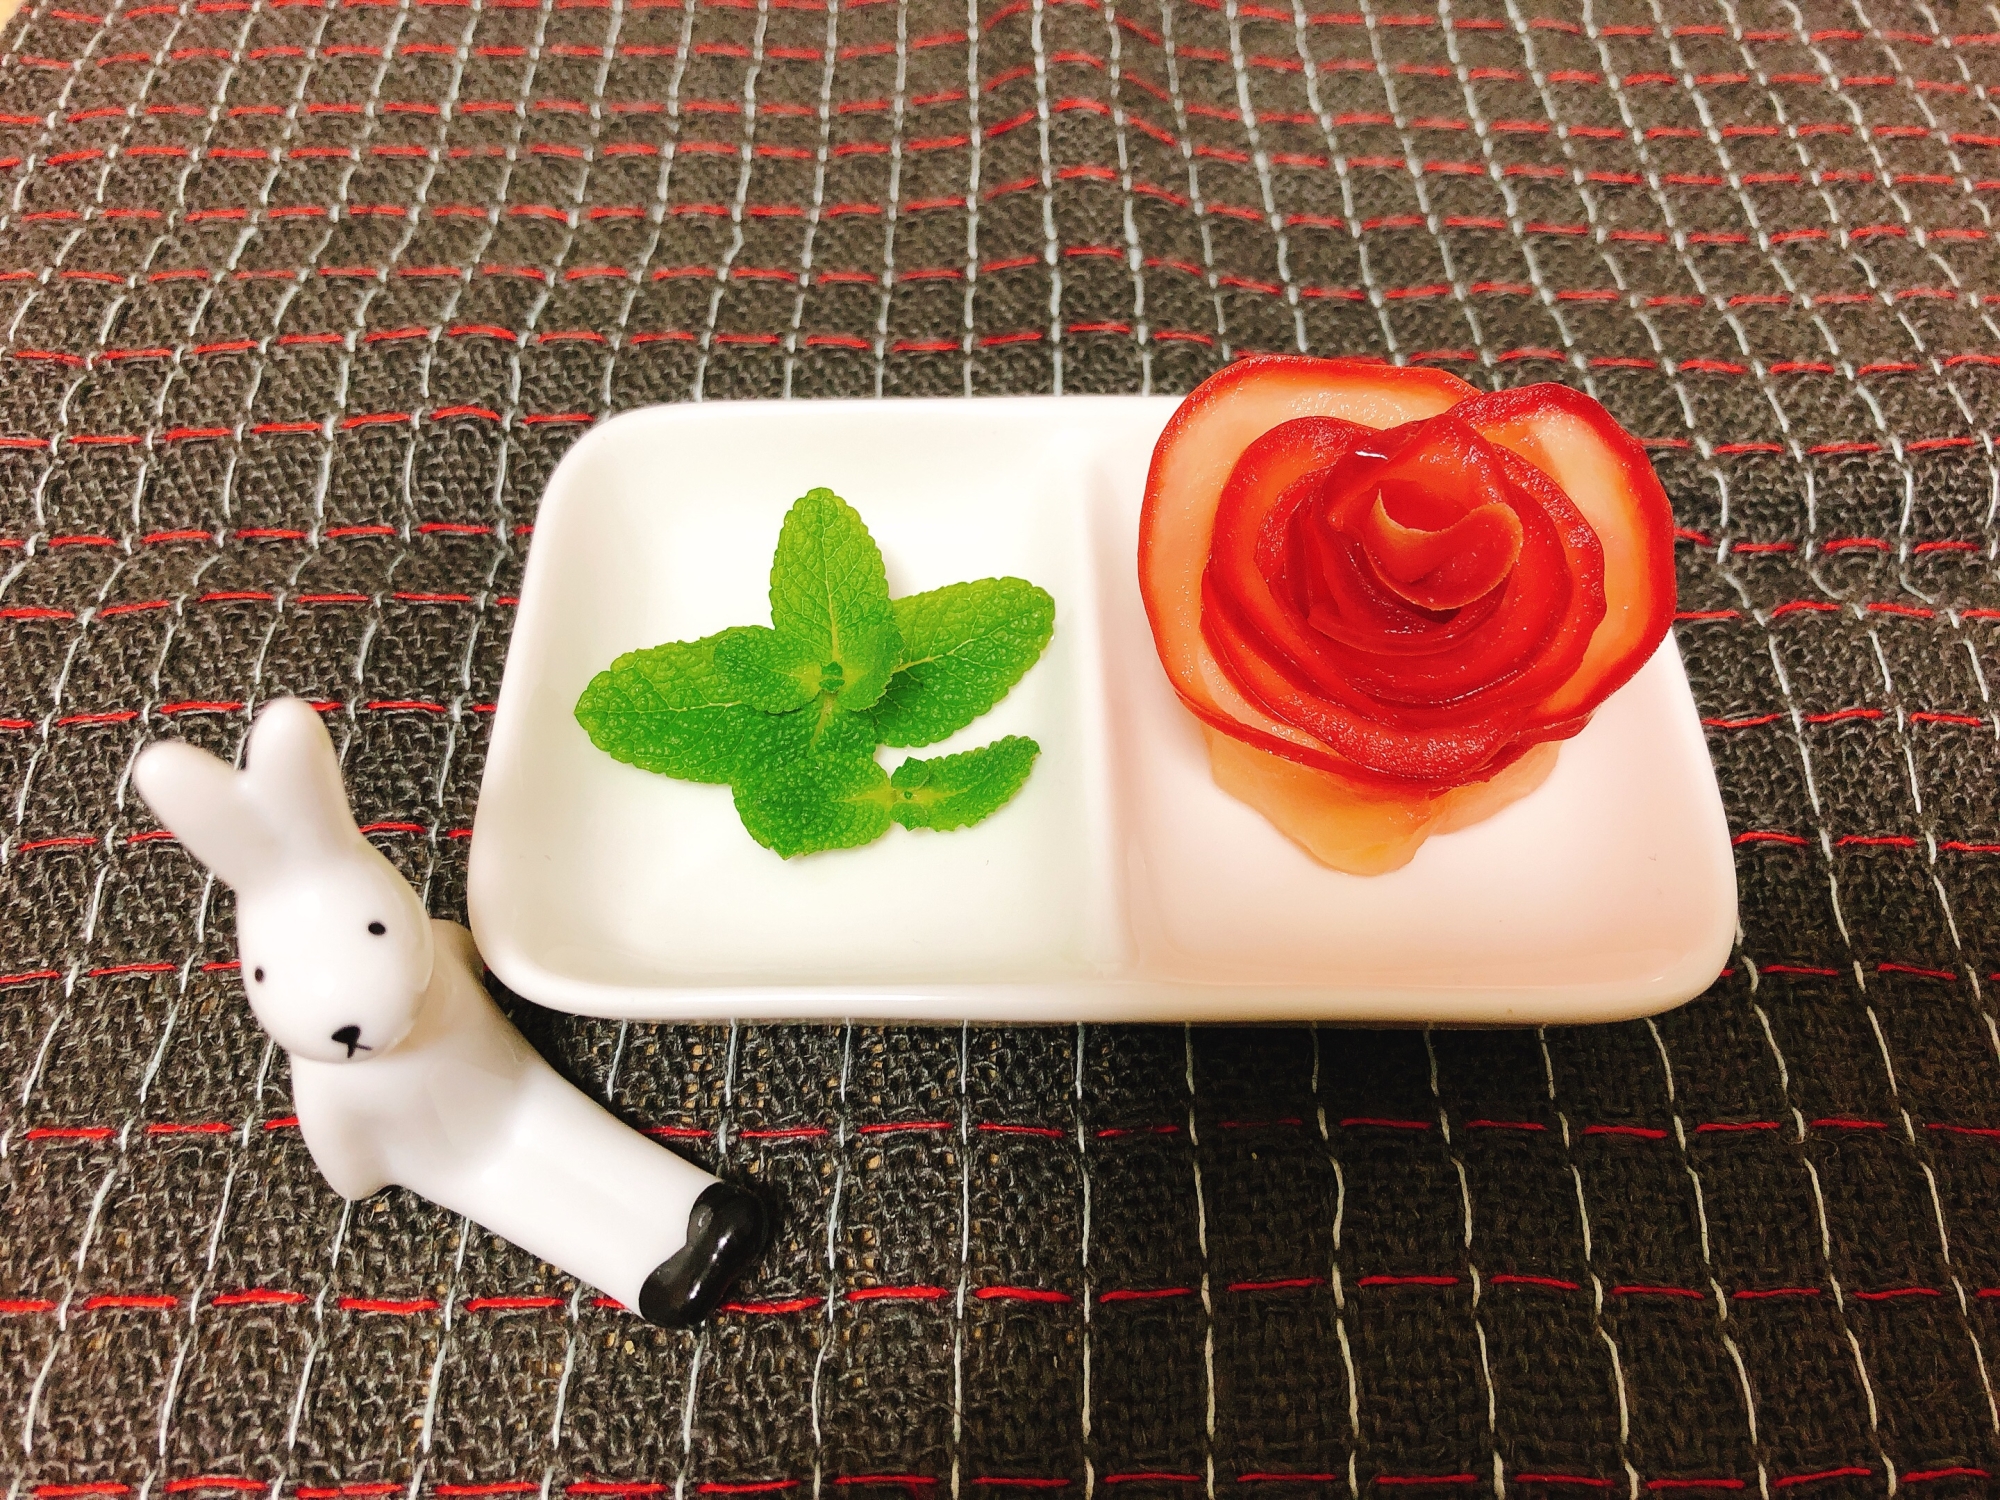 真紅の薔薇リンゴ(潰瘍性大腸炎☆)